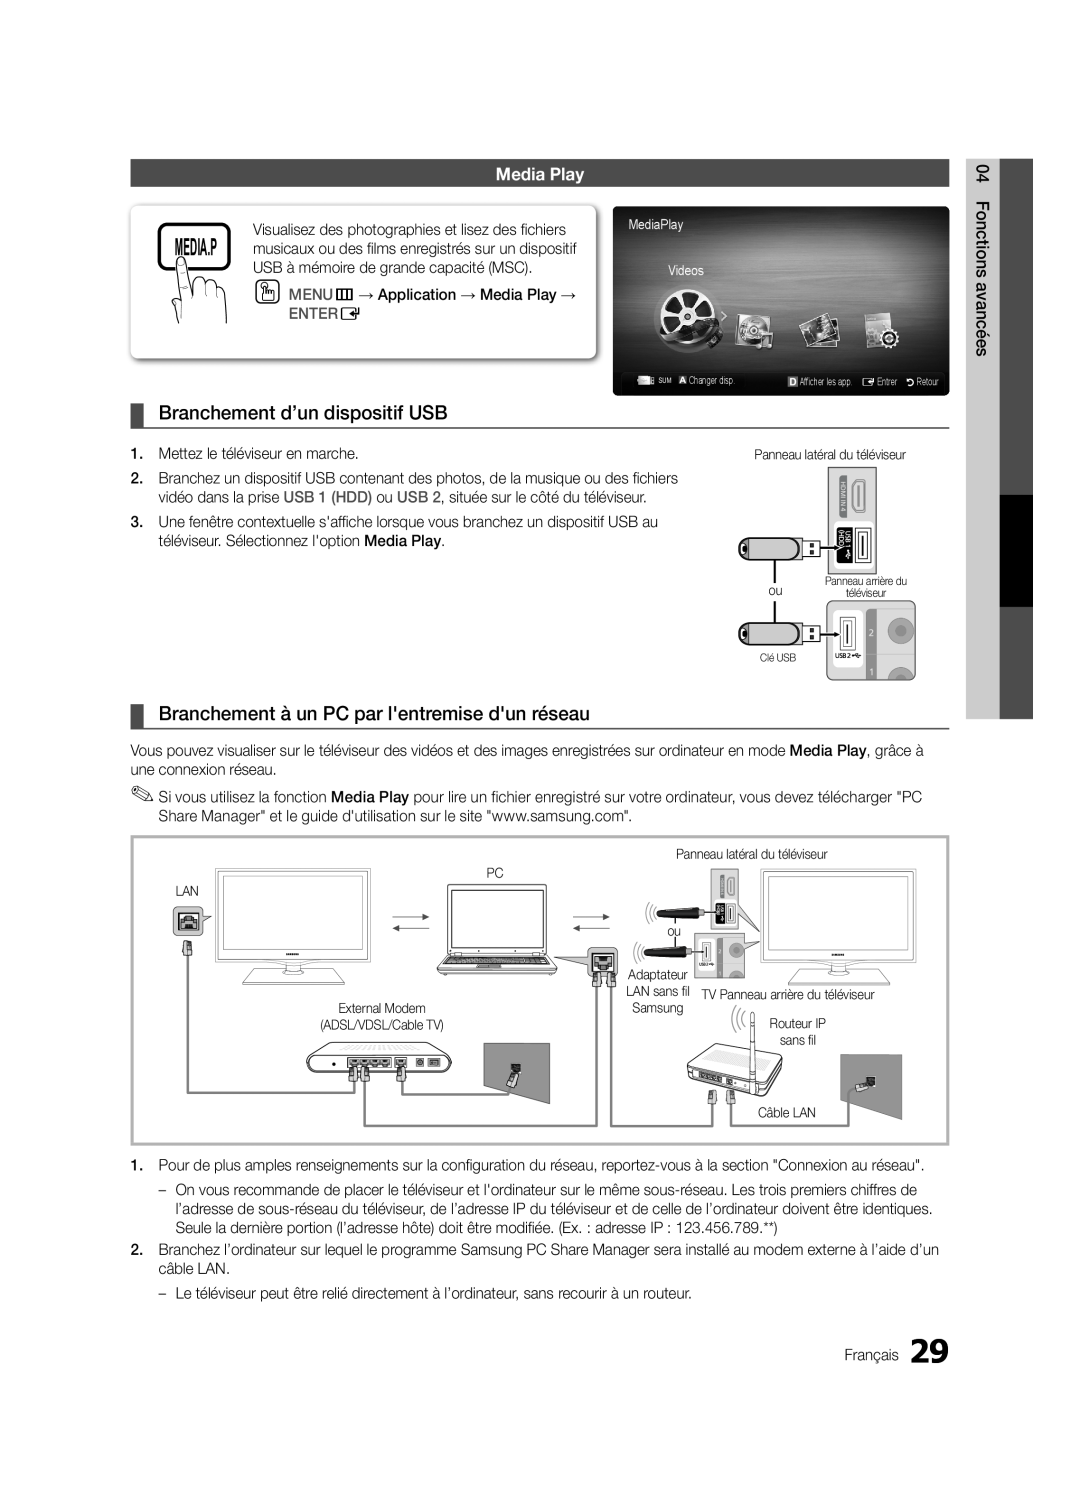 Samsung LN32C550 Branchement d’un dispositif USB, Branchement à un PC par lentremise dun réseau, Media Play, Entere 